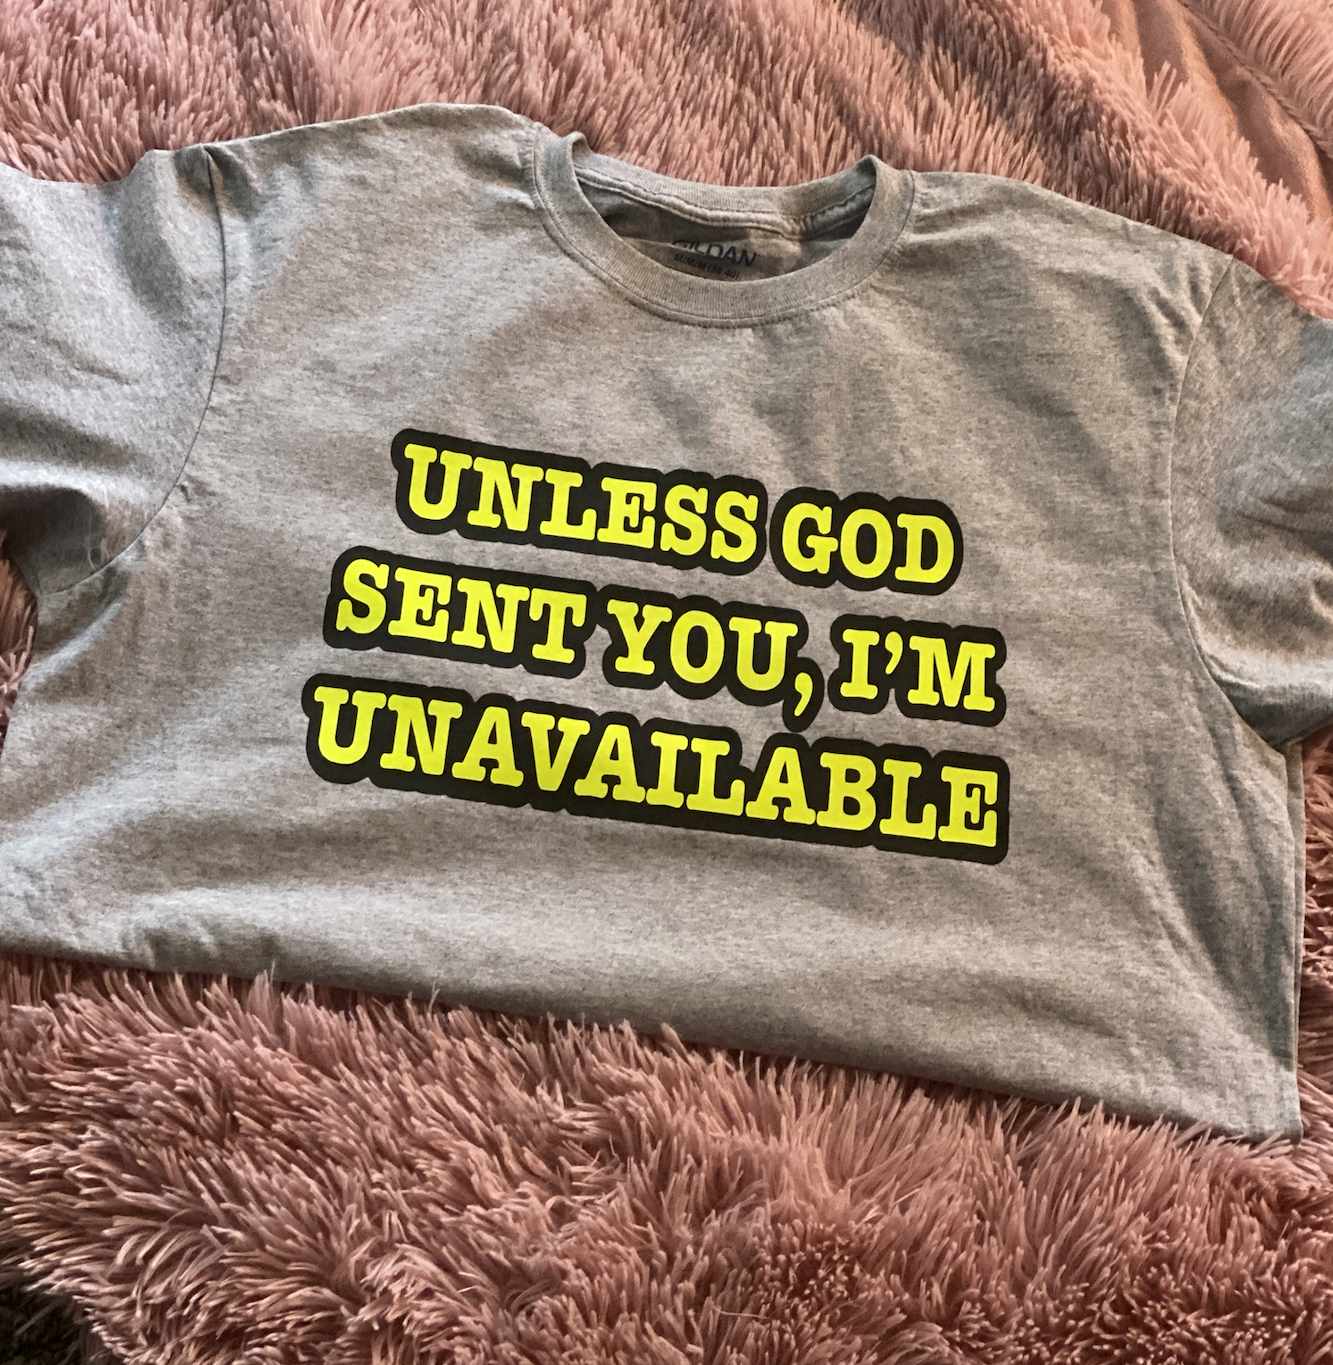 Unless God Sent You, I'm Unavailable